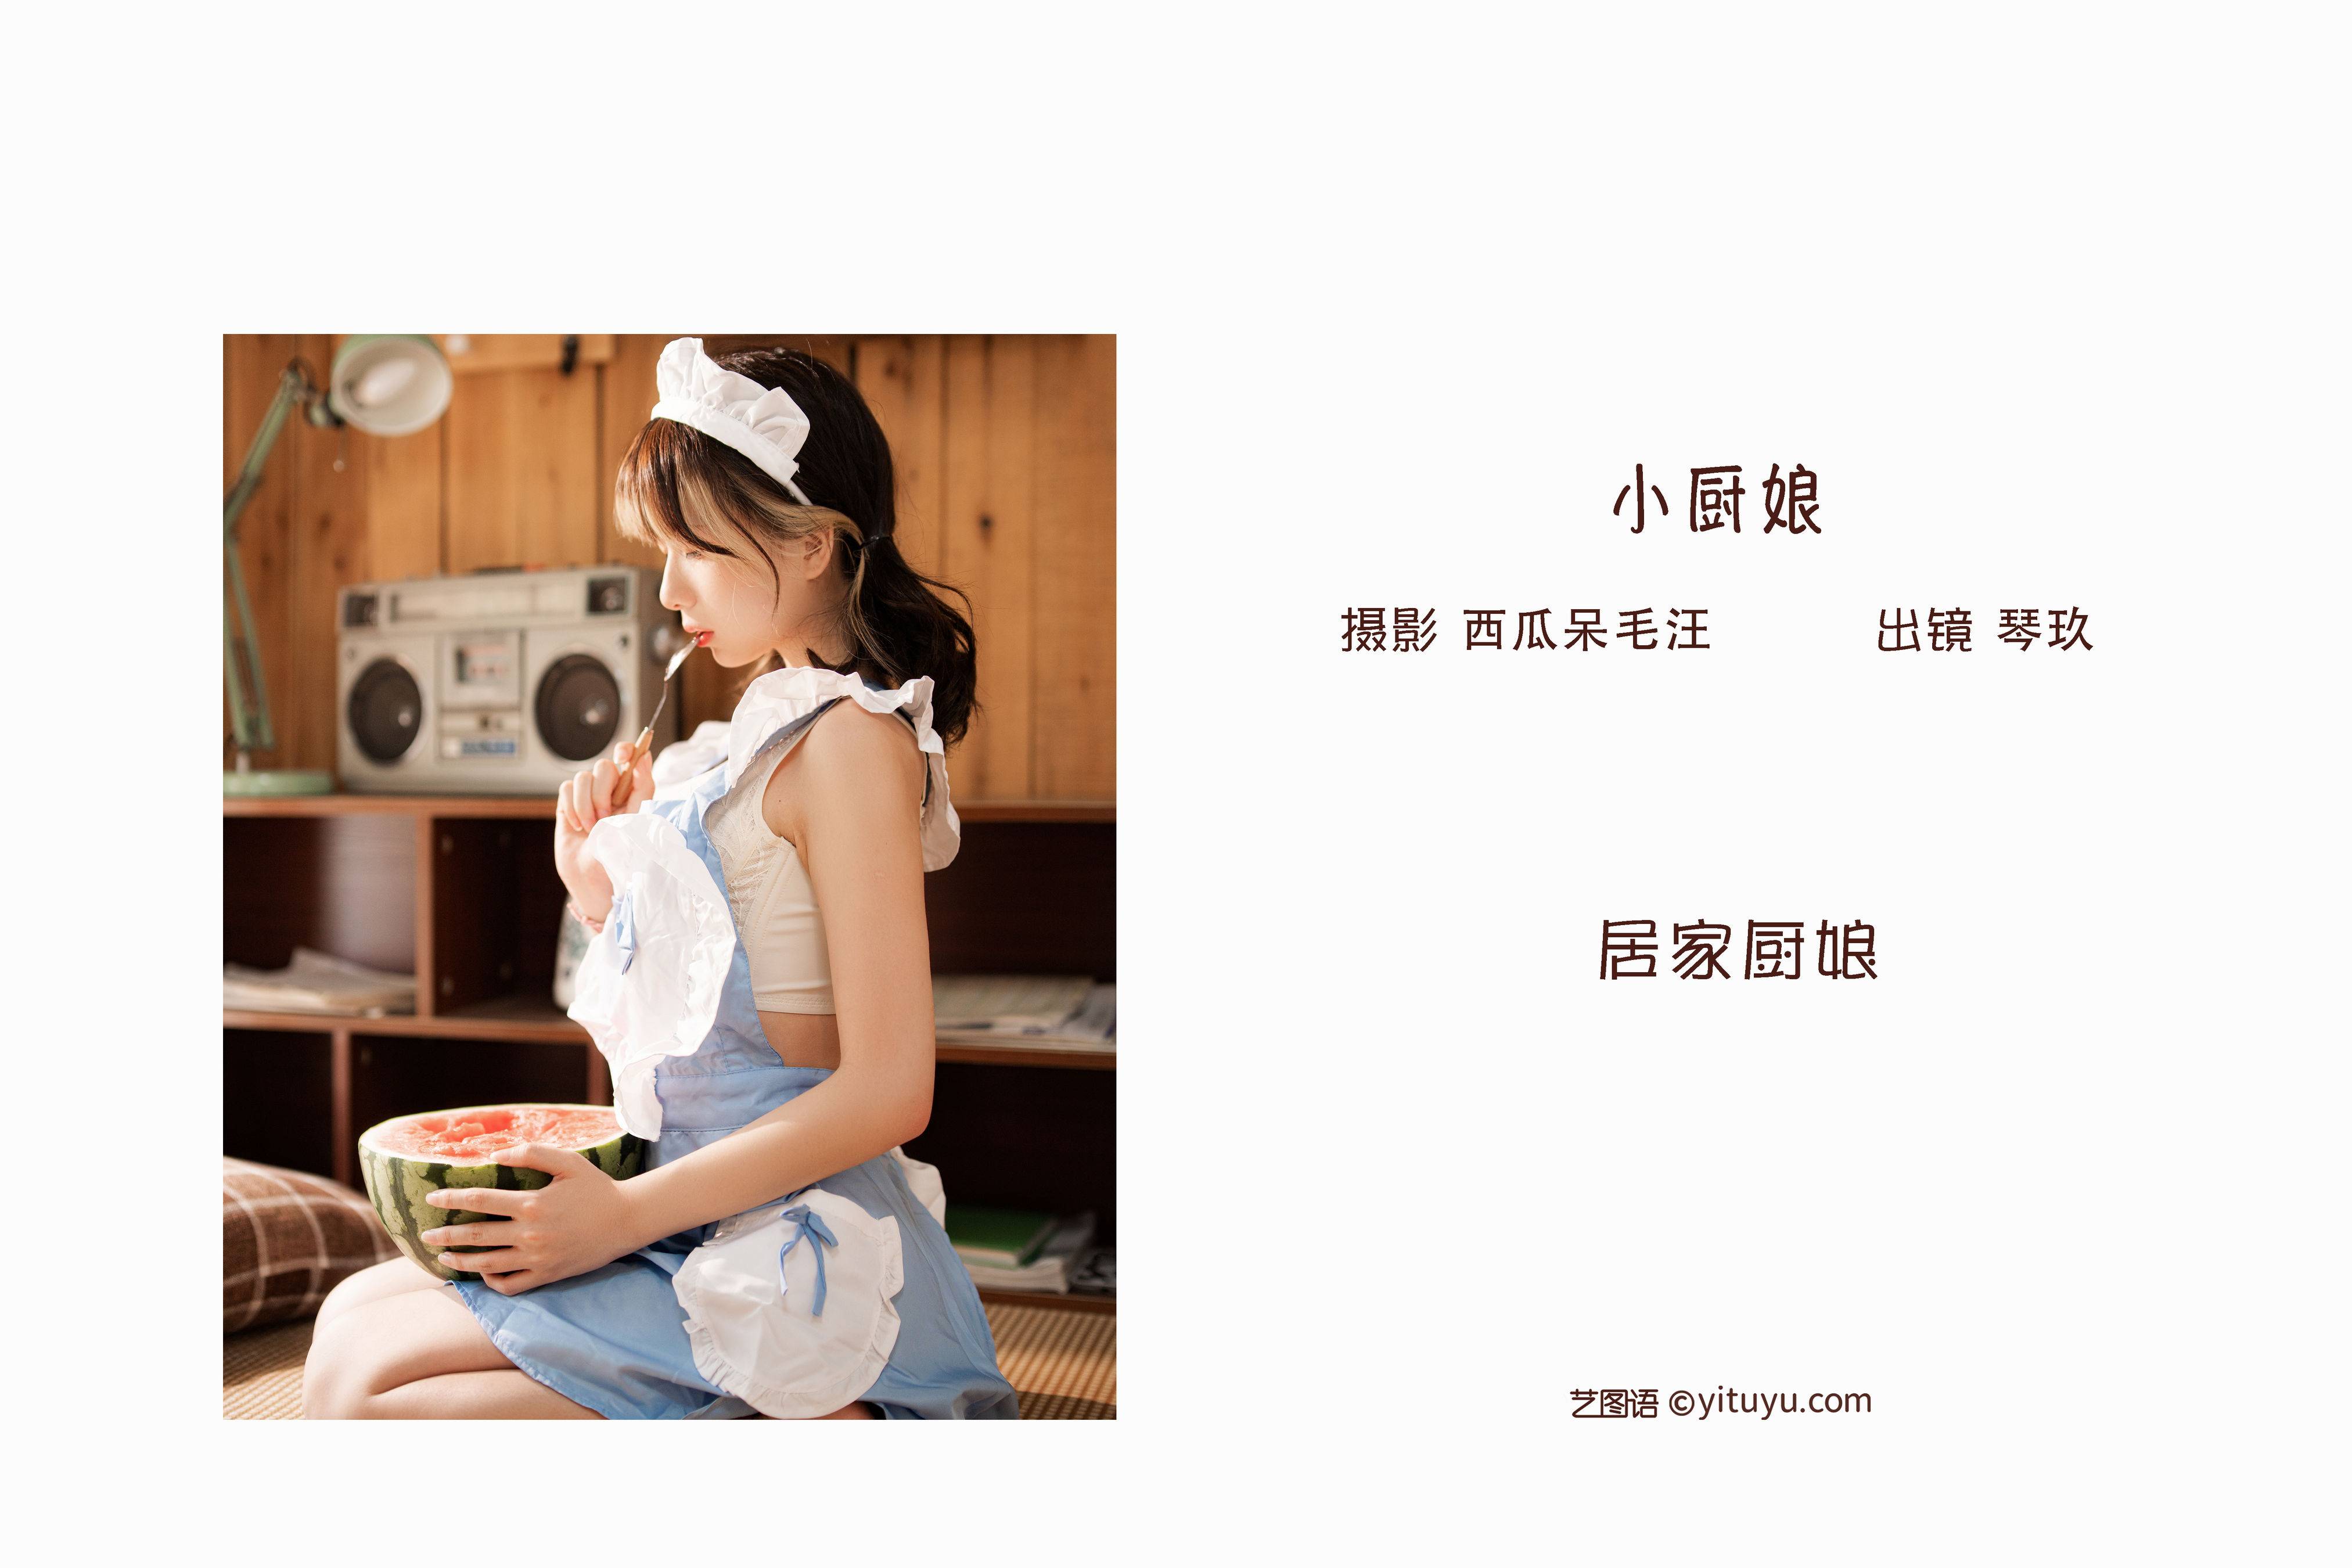 小厨娘 Cosplay 写真集 少女&YiTuYu艺图语-2